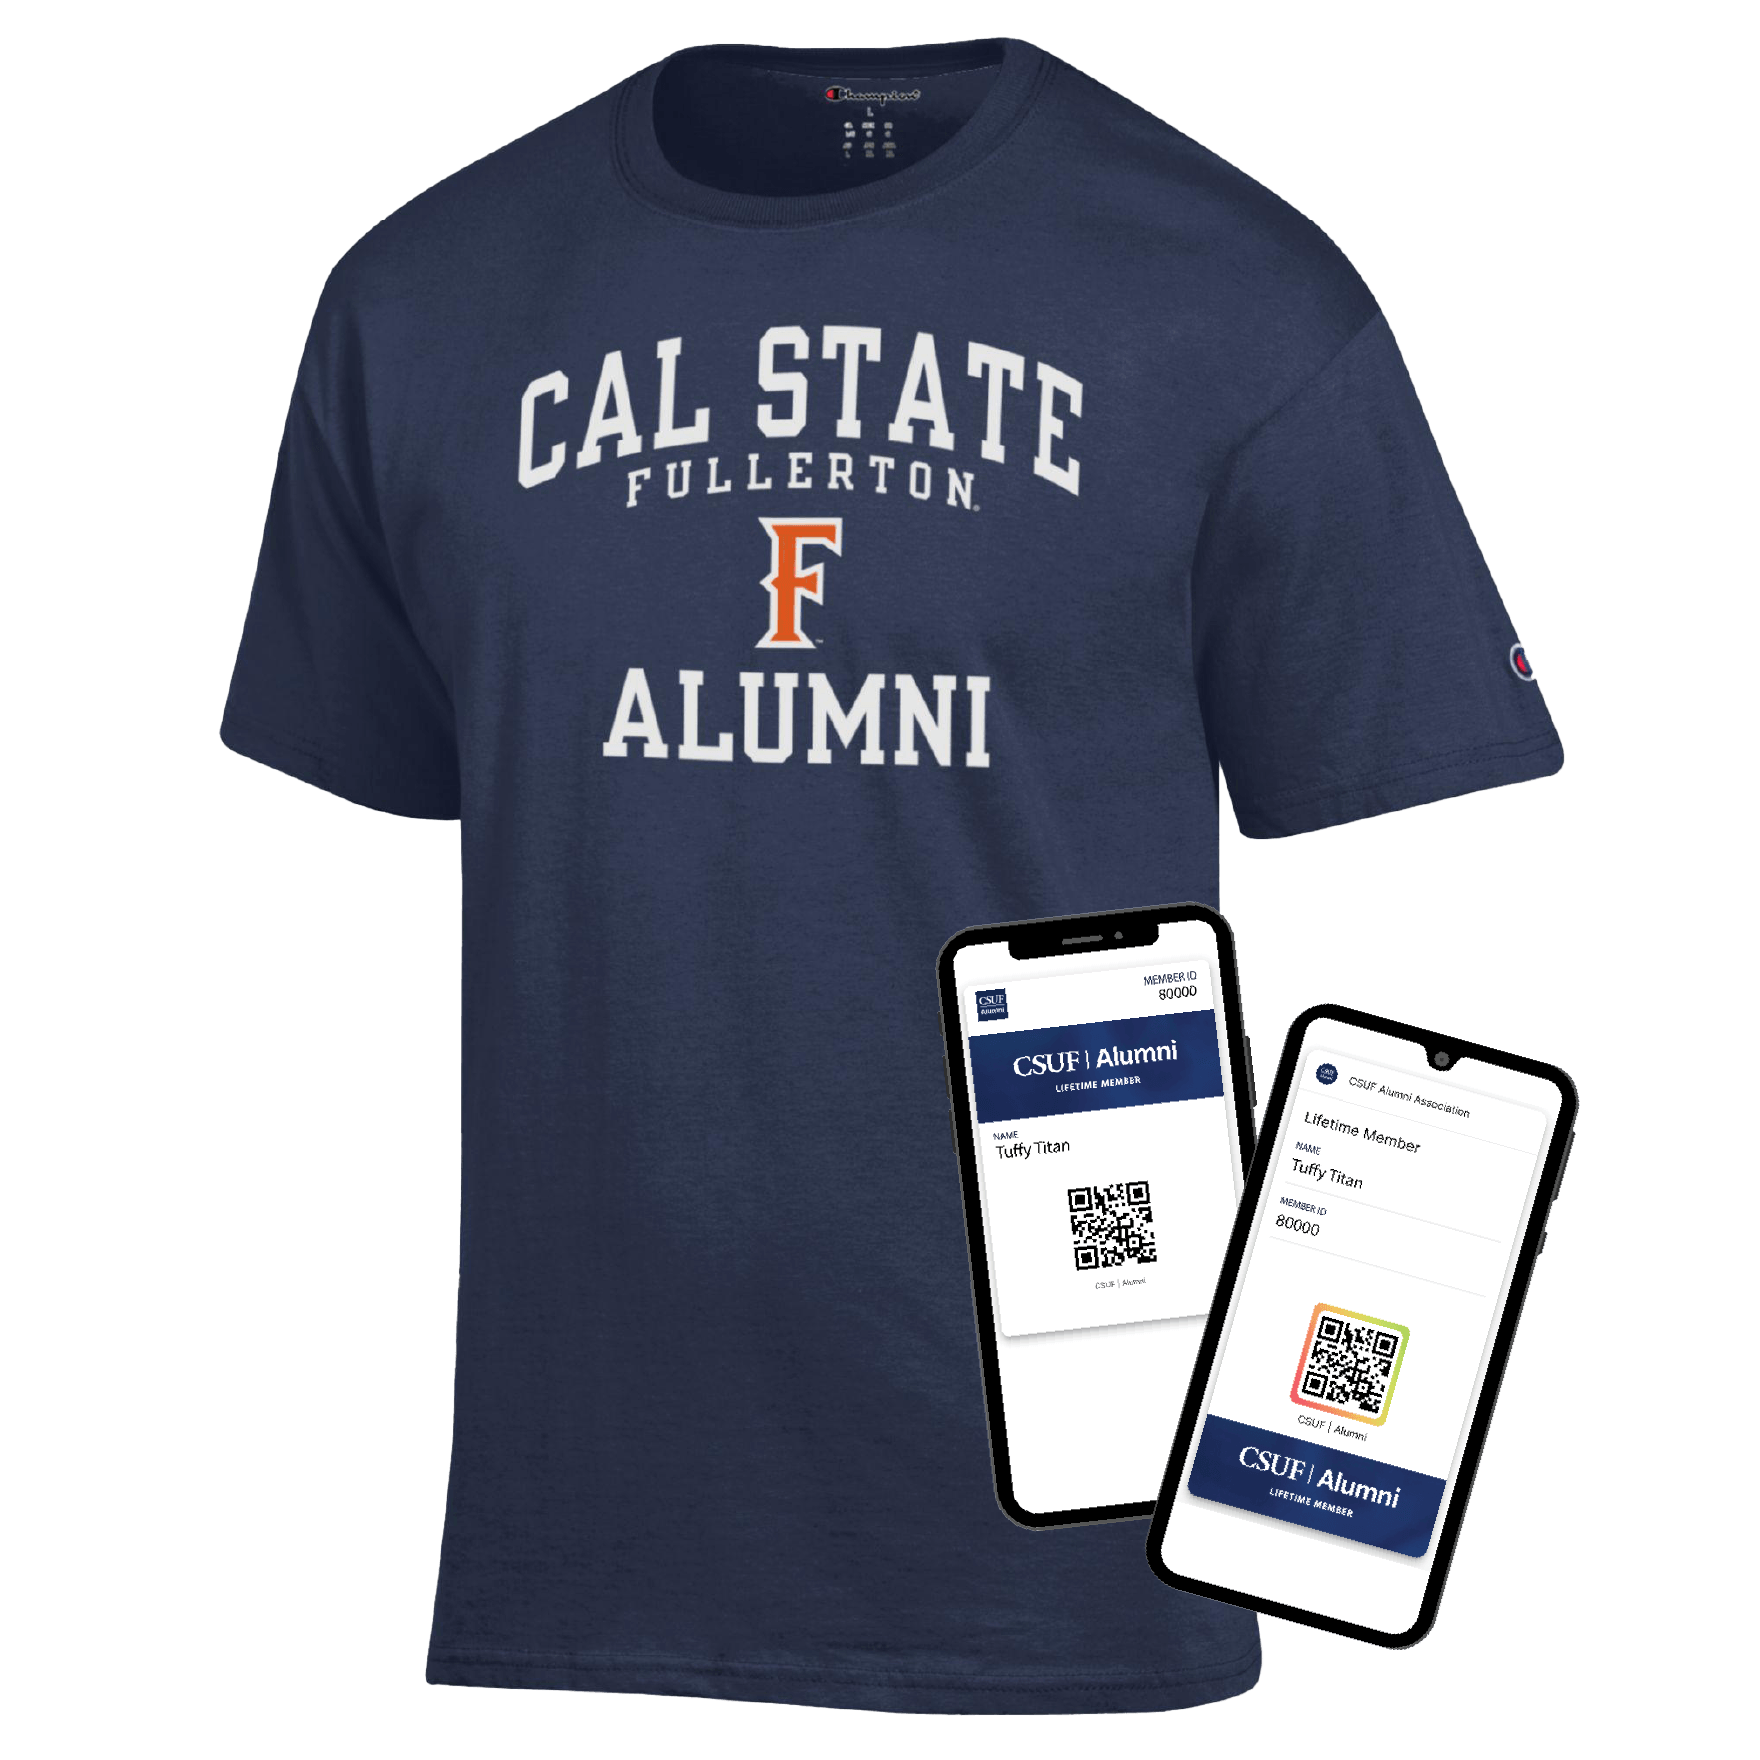 CSUF Alumni Member Exclusive t-shirt and digital membership card